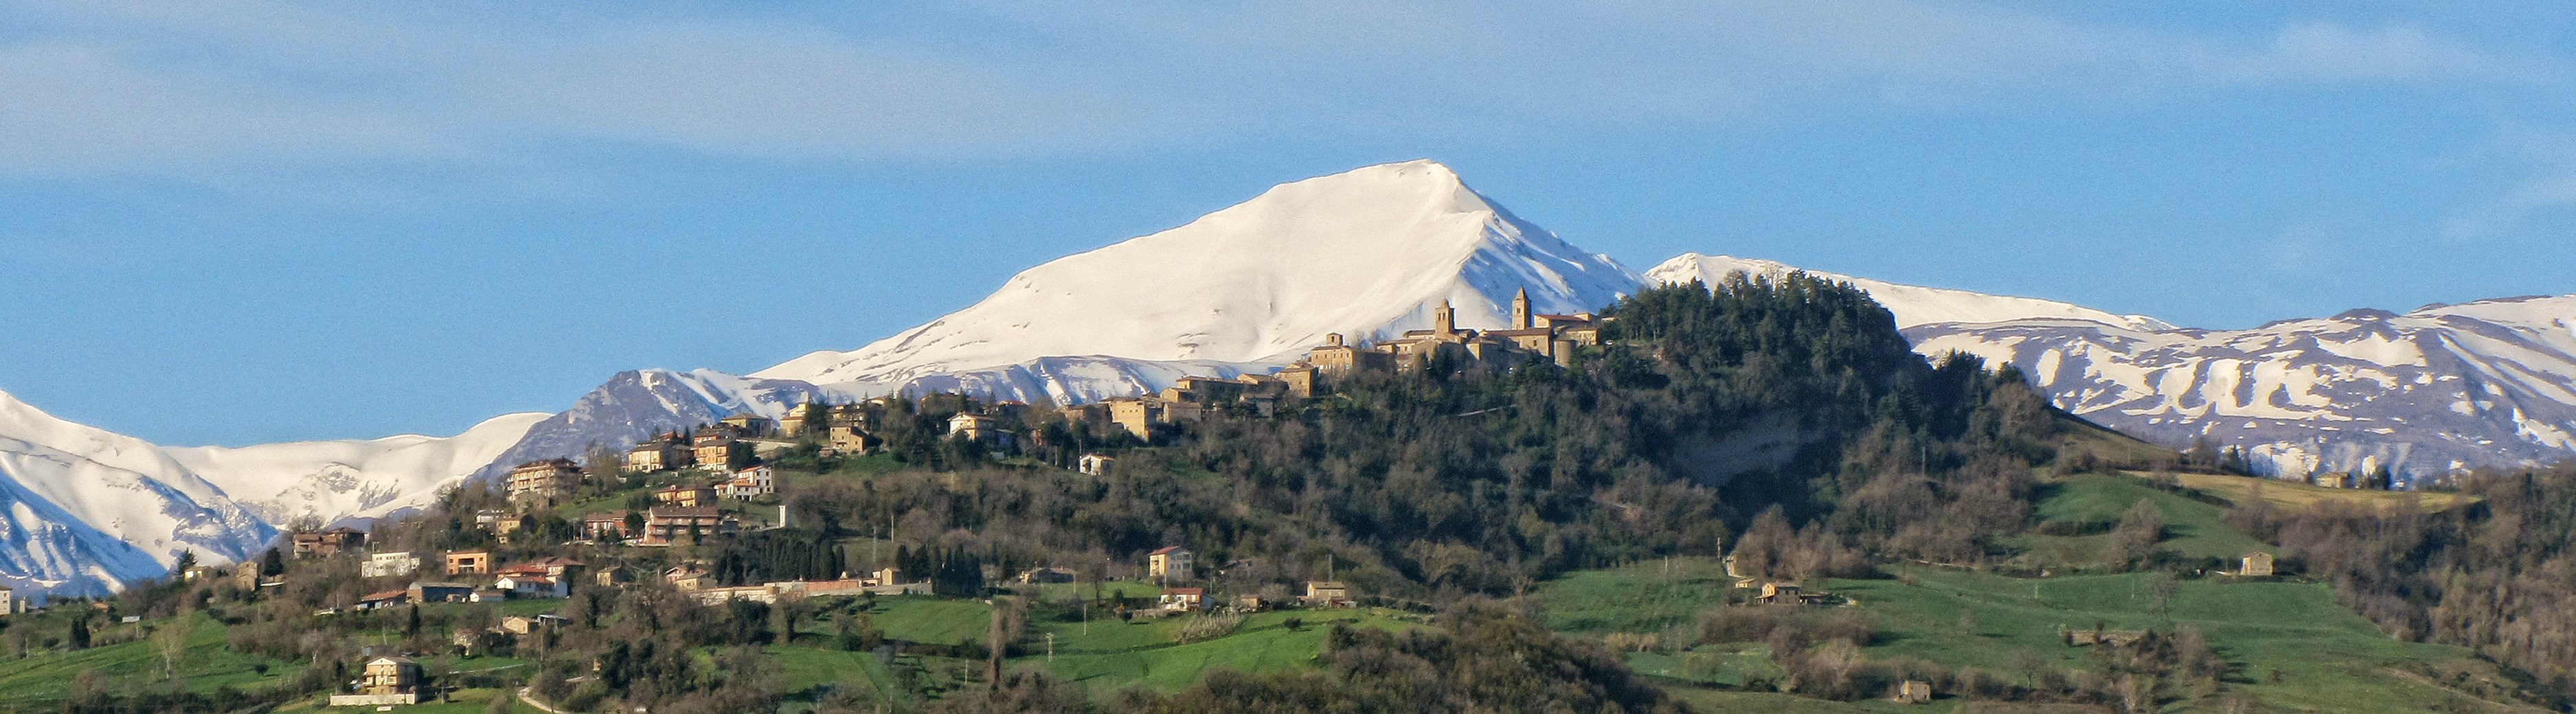 Penna San Giovanni e Monti Sibillini